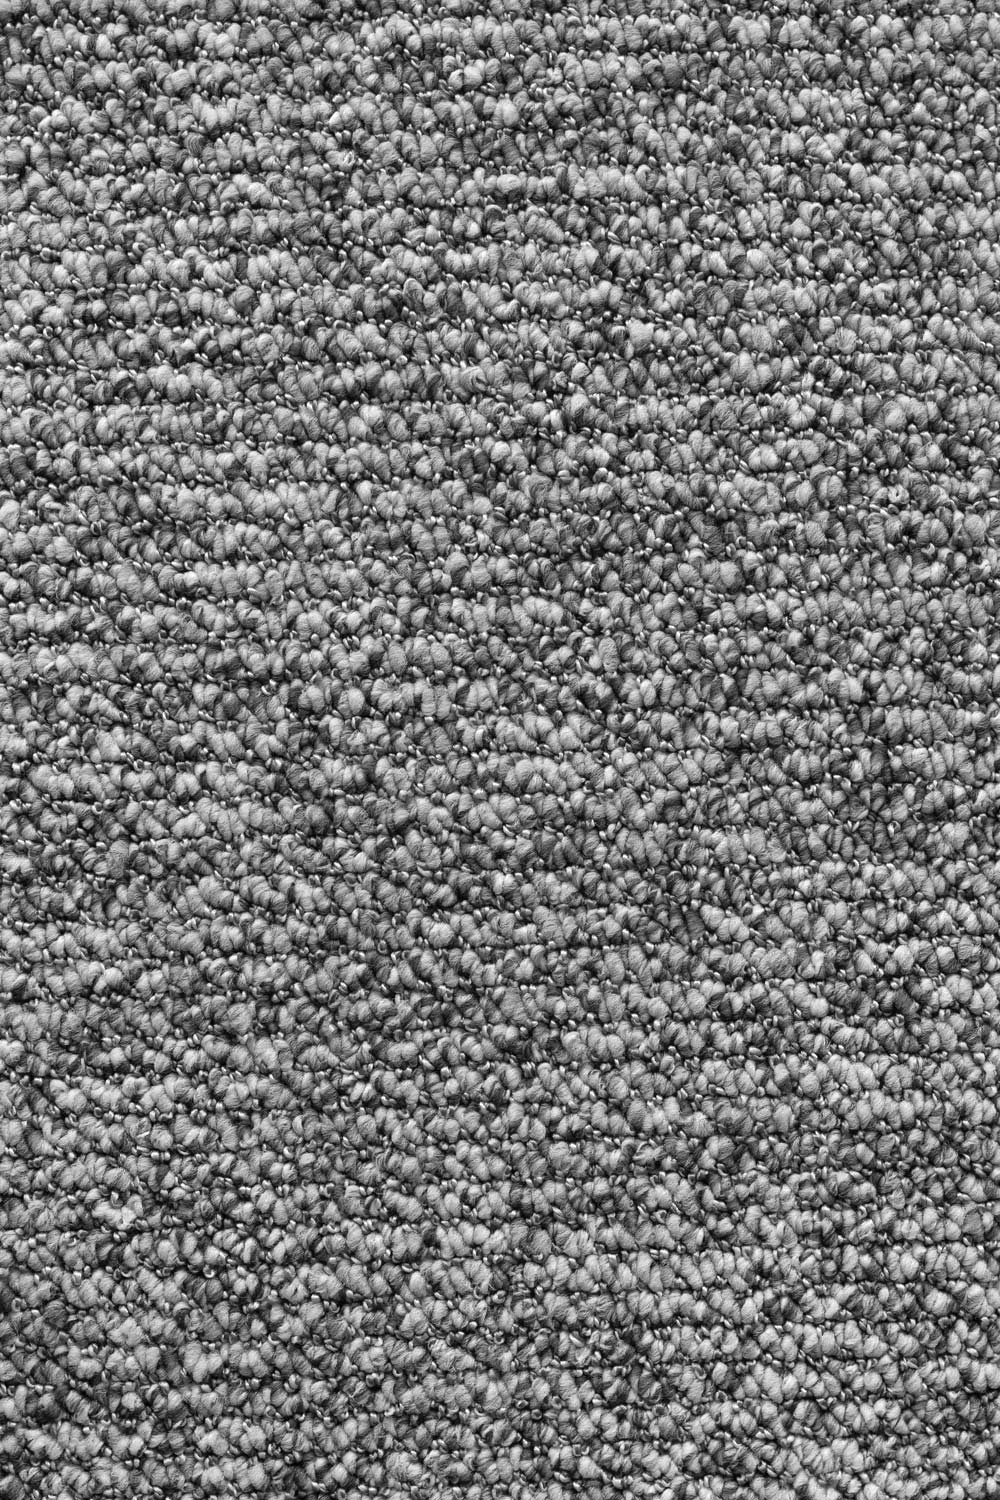 Metrážny koberec Holborn 8124 400 cm